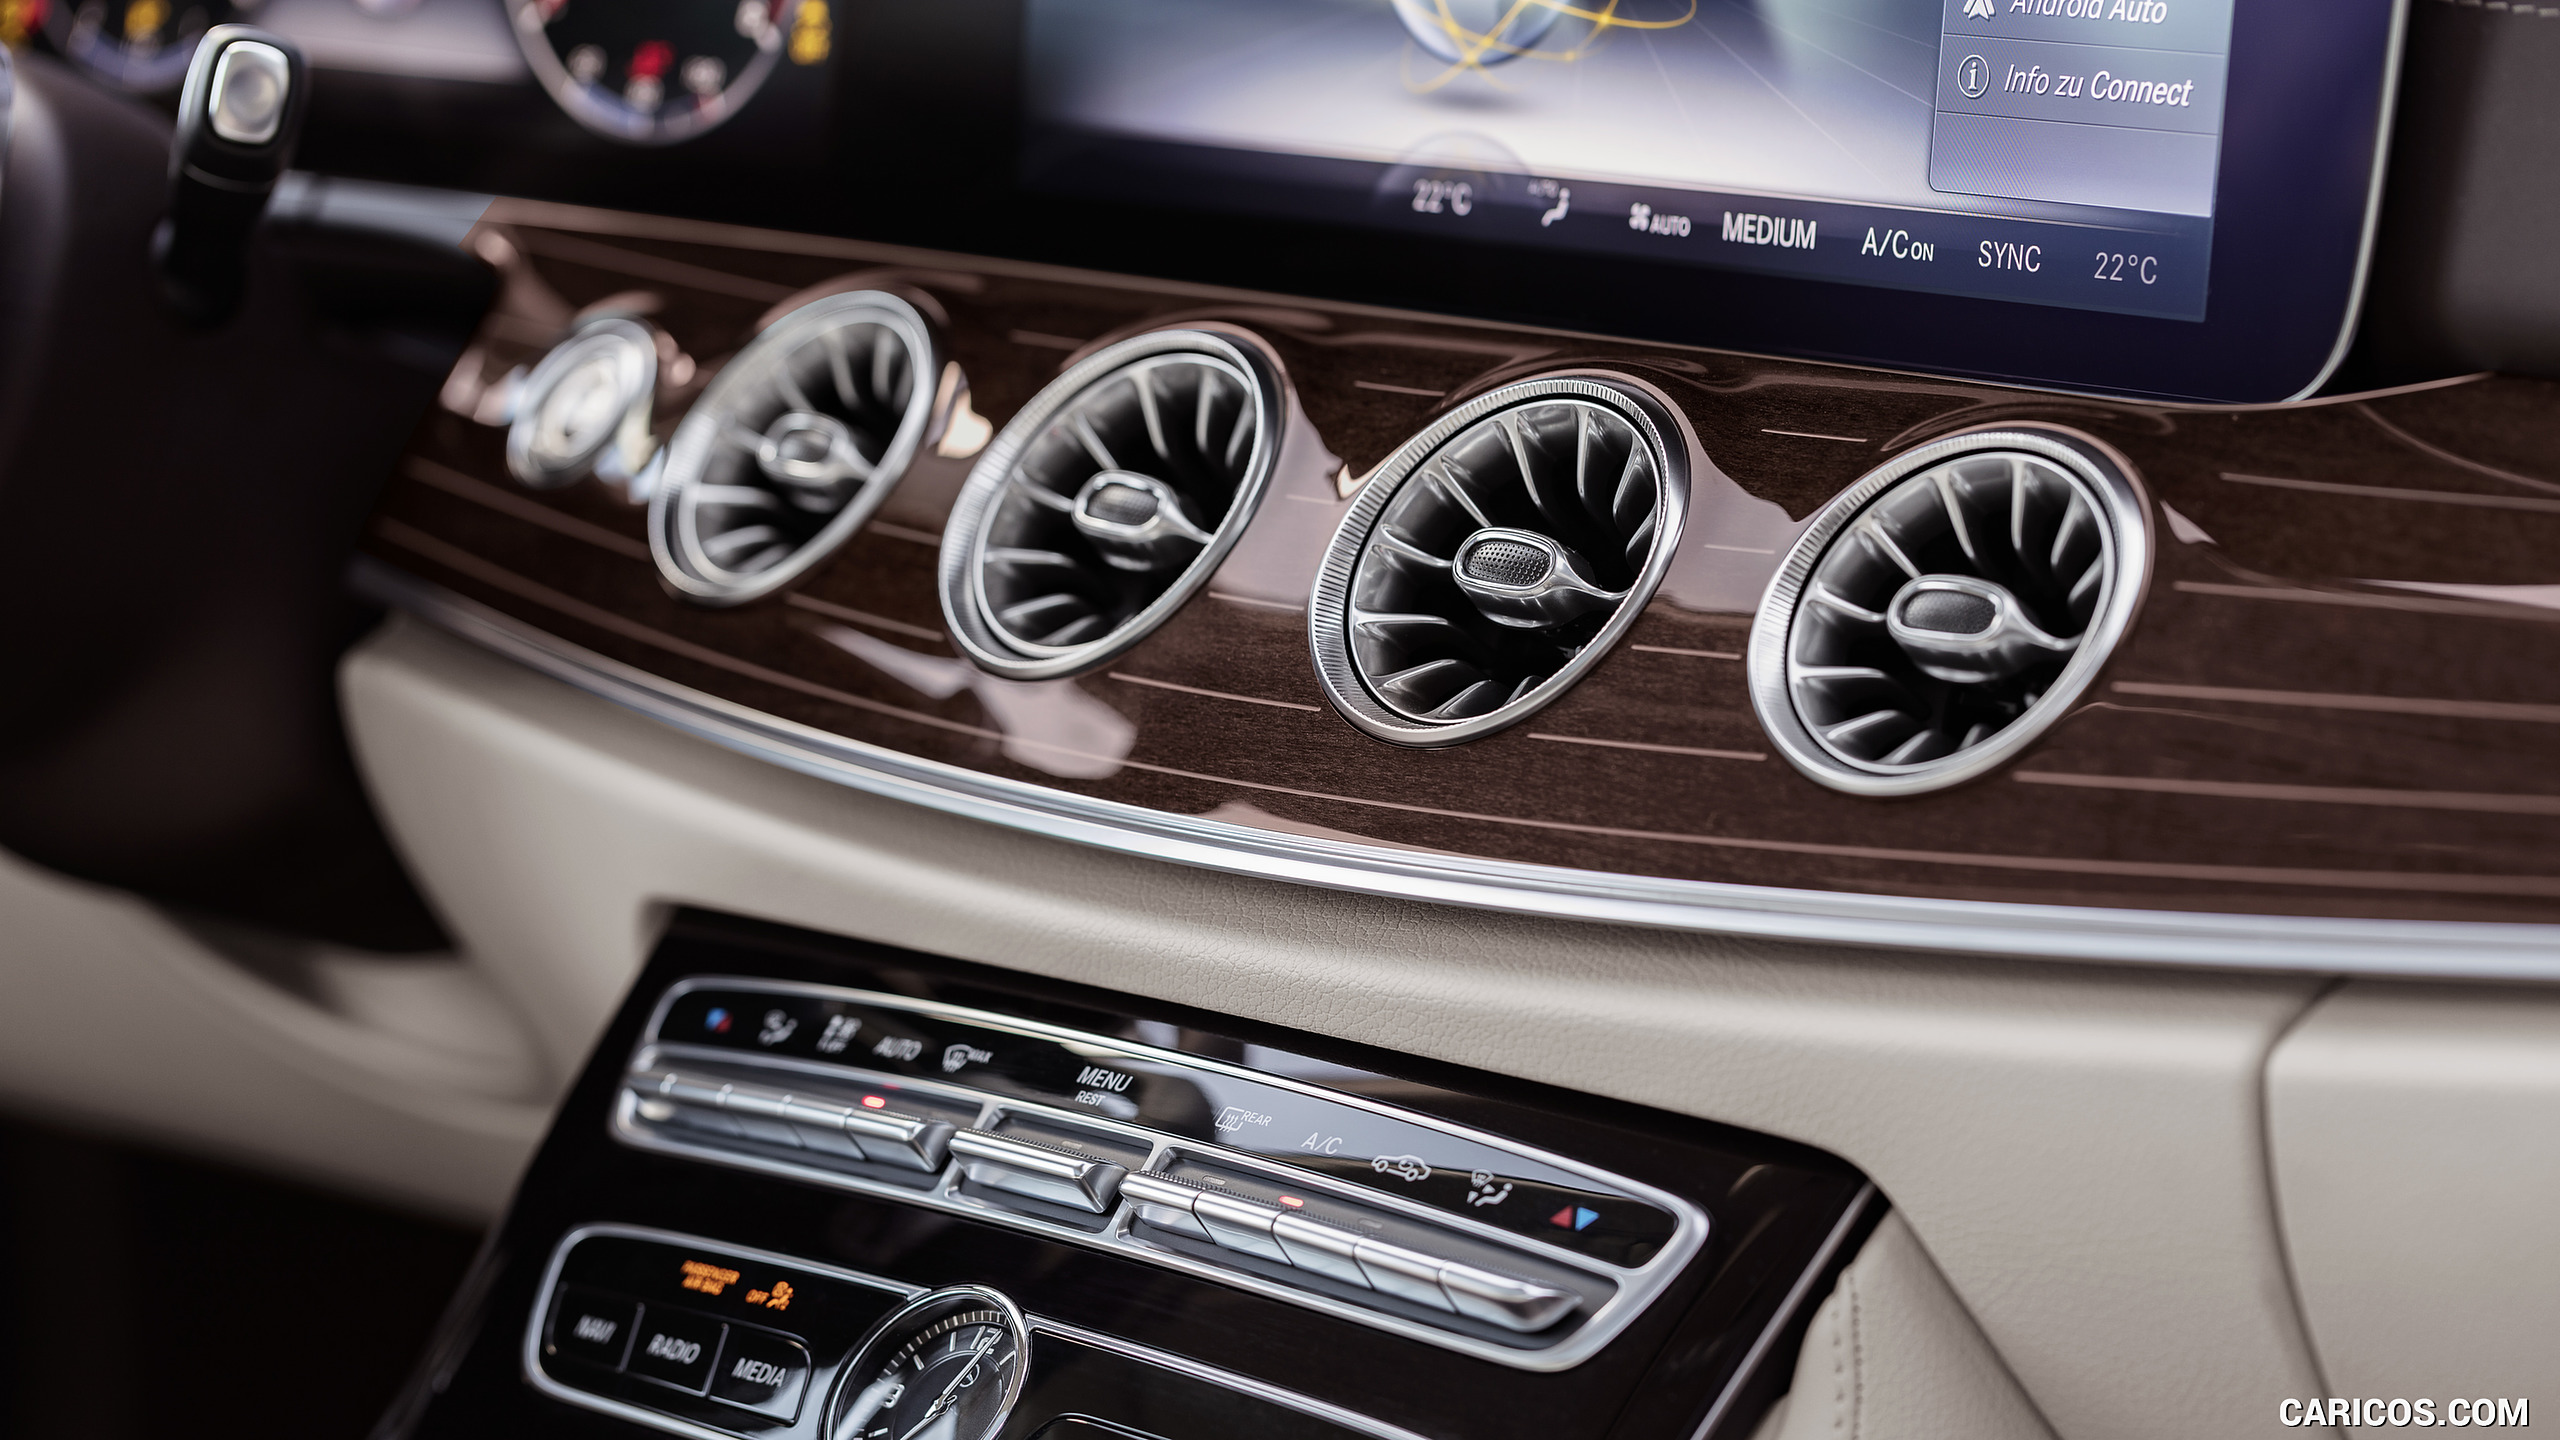 2018 Mercedes-Benz E-Class Coupe - Macchiato Beige / Espresso Brown Leather Interior, Detail, #16 of 365